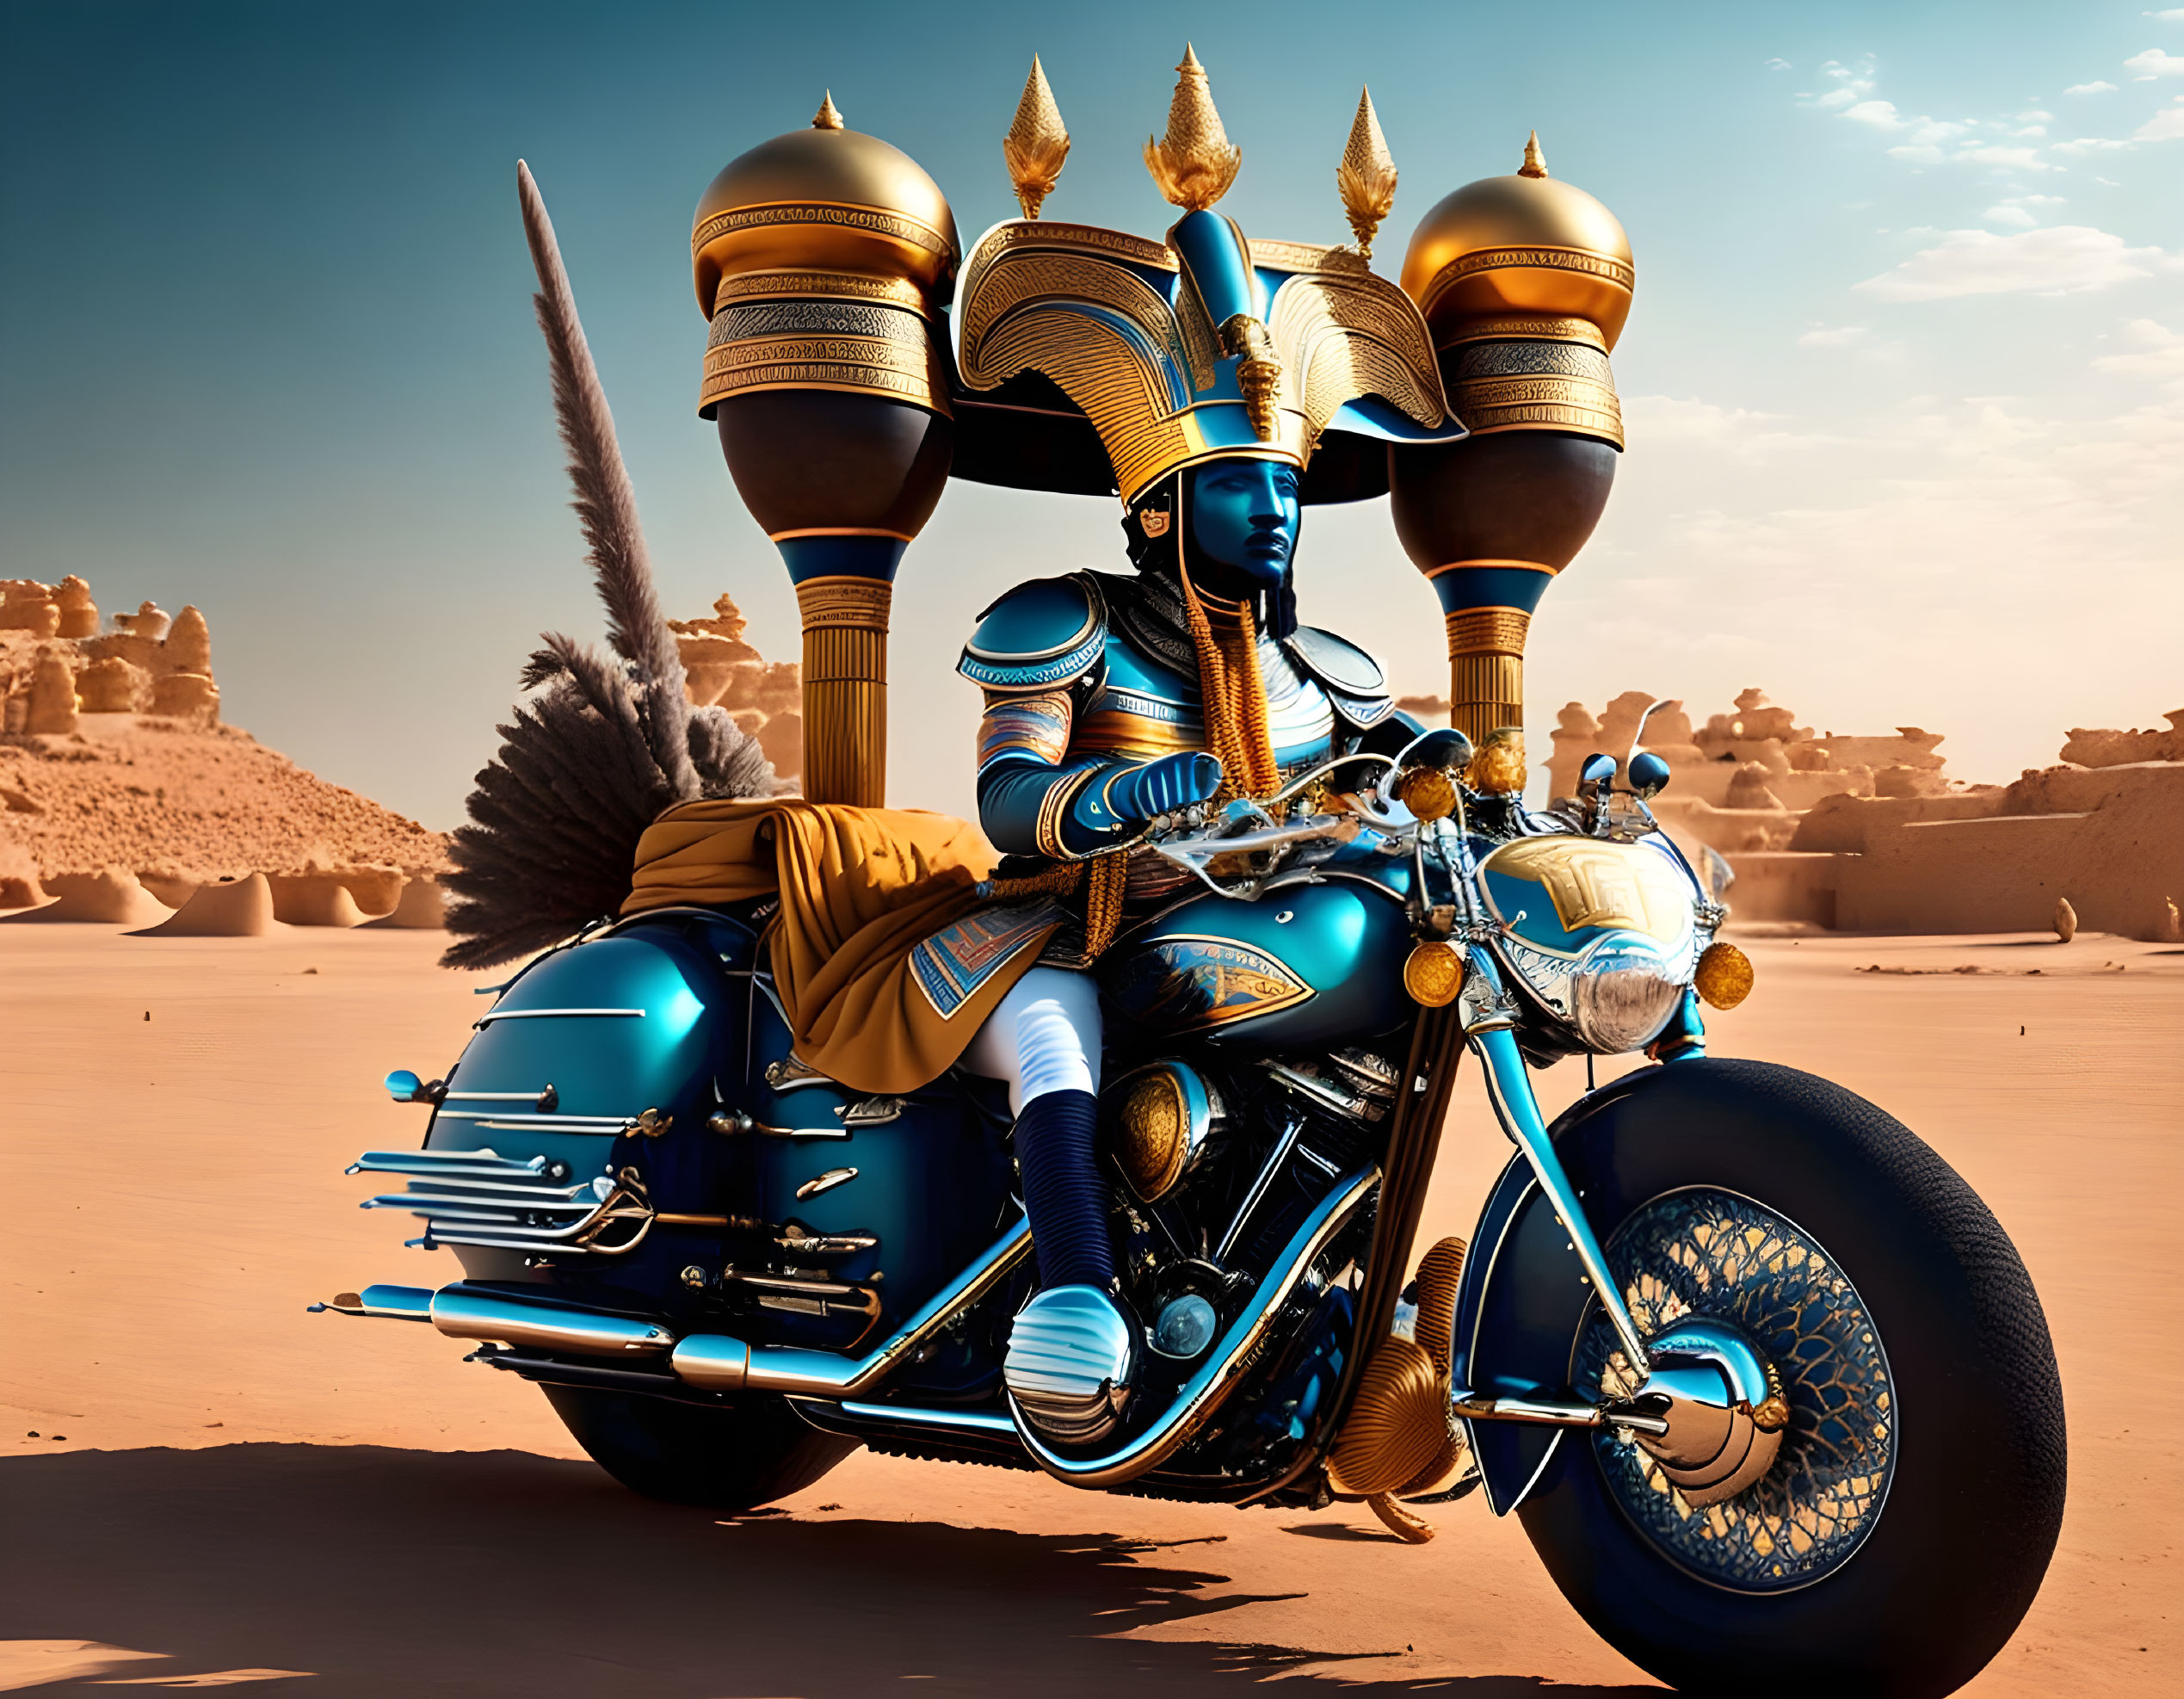 Ramses III on his motorcycle